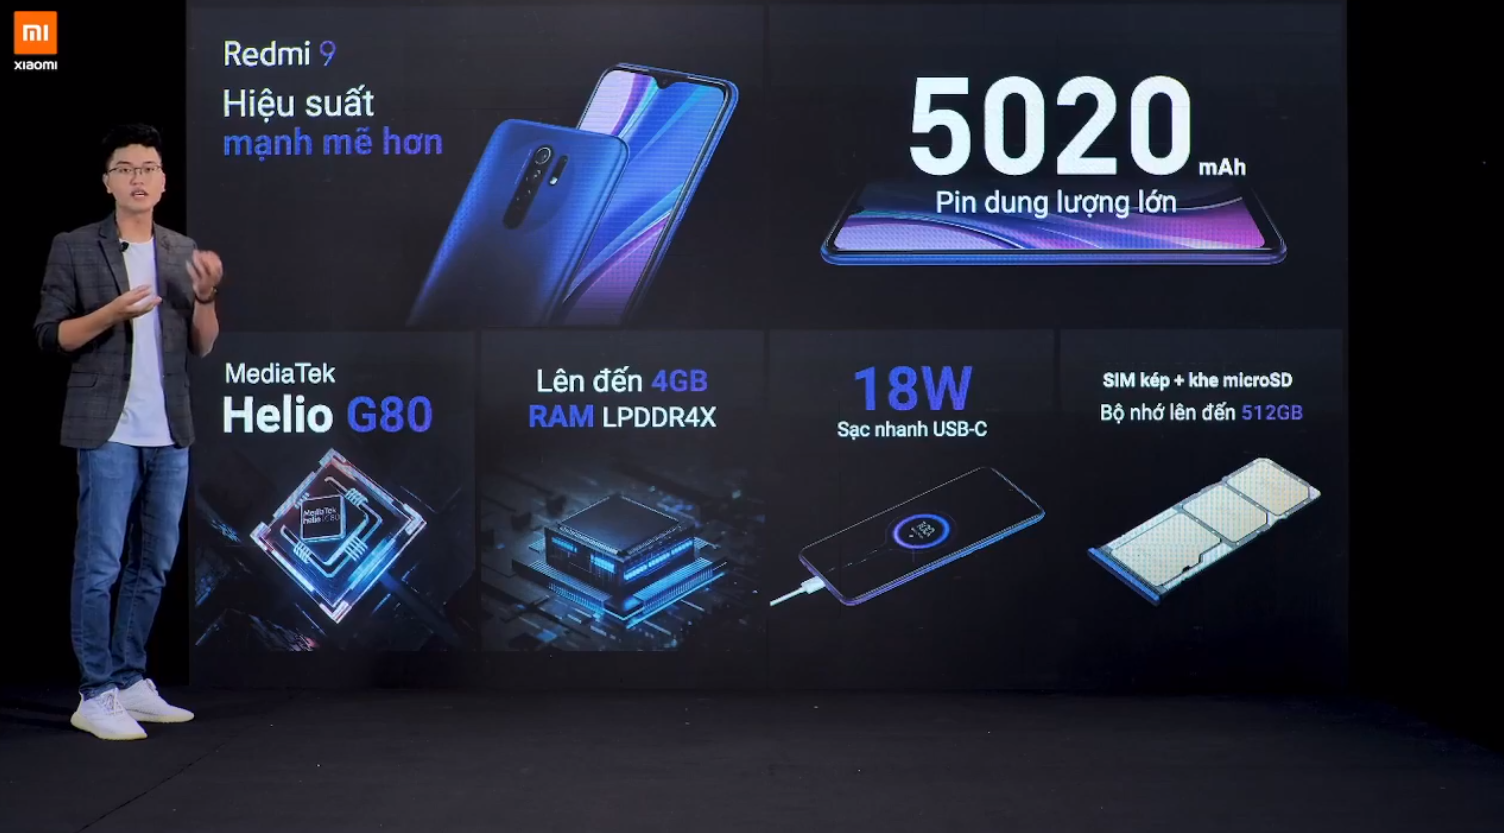 Sforum - Trang thông tin công nghệ mới nhất Xiaomi-redmi-9-7 Redmi 9 ra mắt tại VN: Smartphone phong cách nhất, màn hình lớn nhất, nhiều công nghệ nhất và giá 